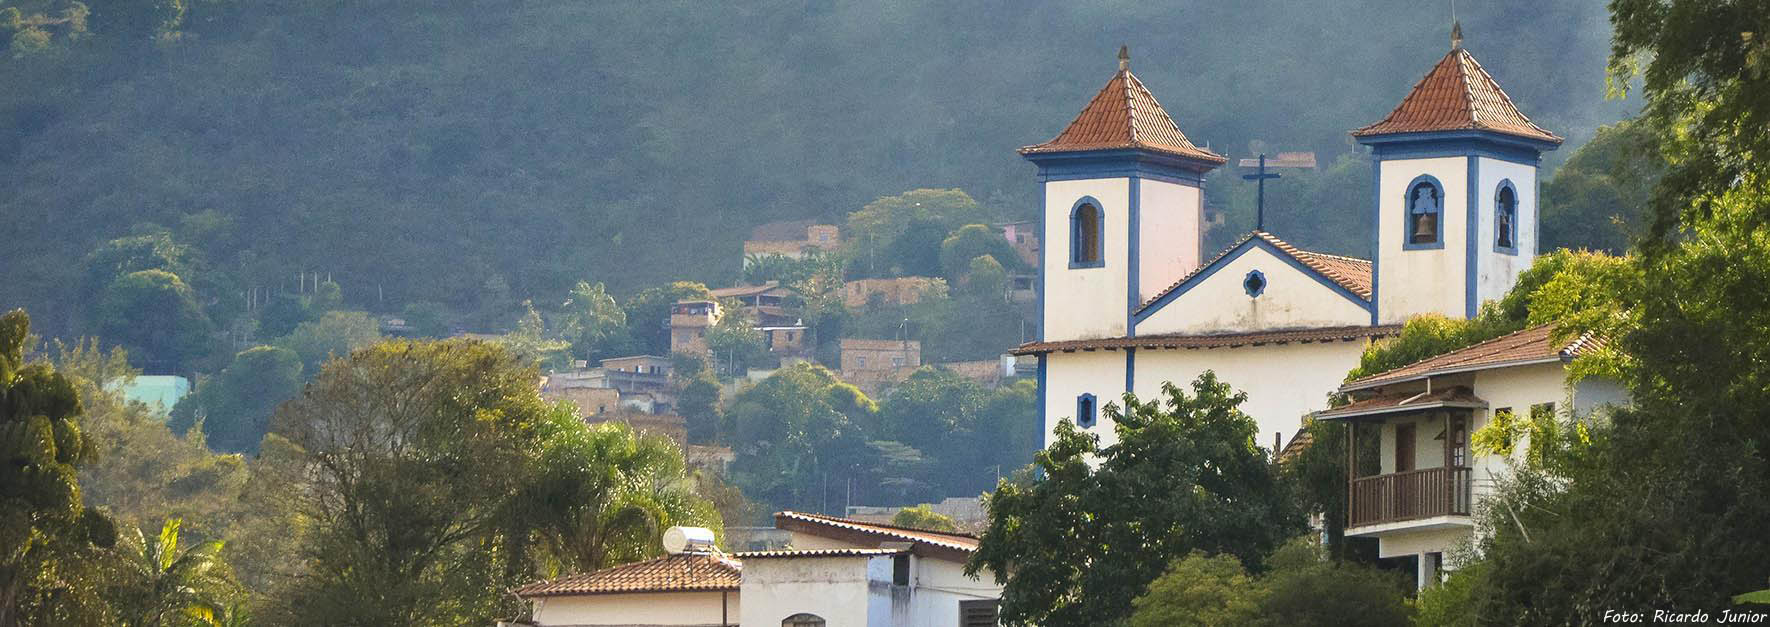 CIRCUITO DO OURO: Ouro Preto, Mariana, Congonhas, Santa Bárbara e Sabará